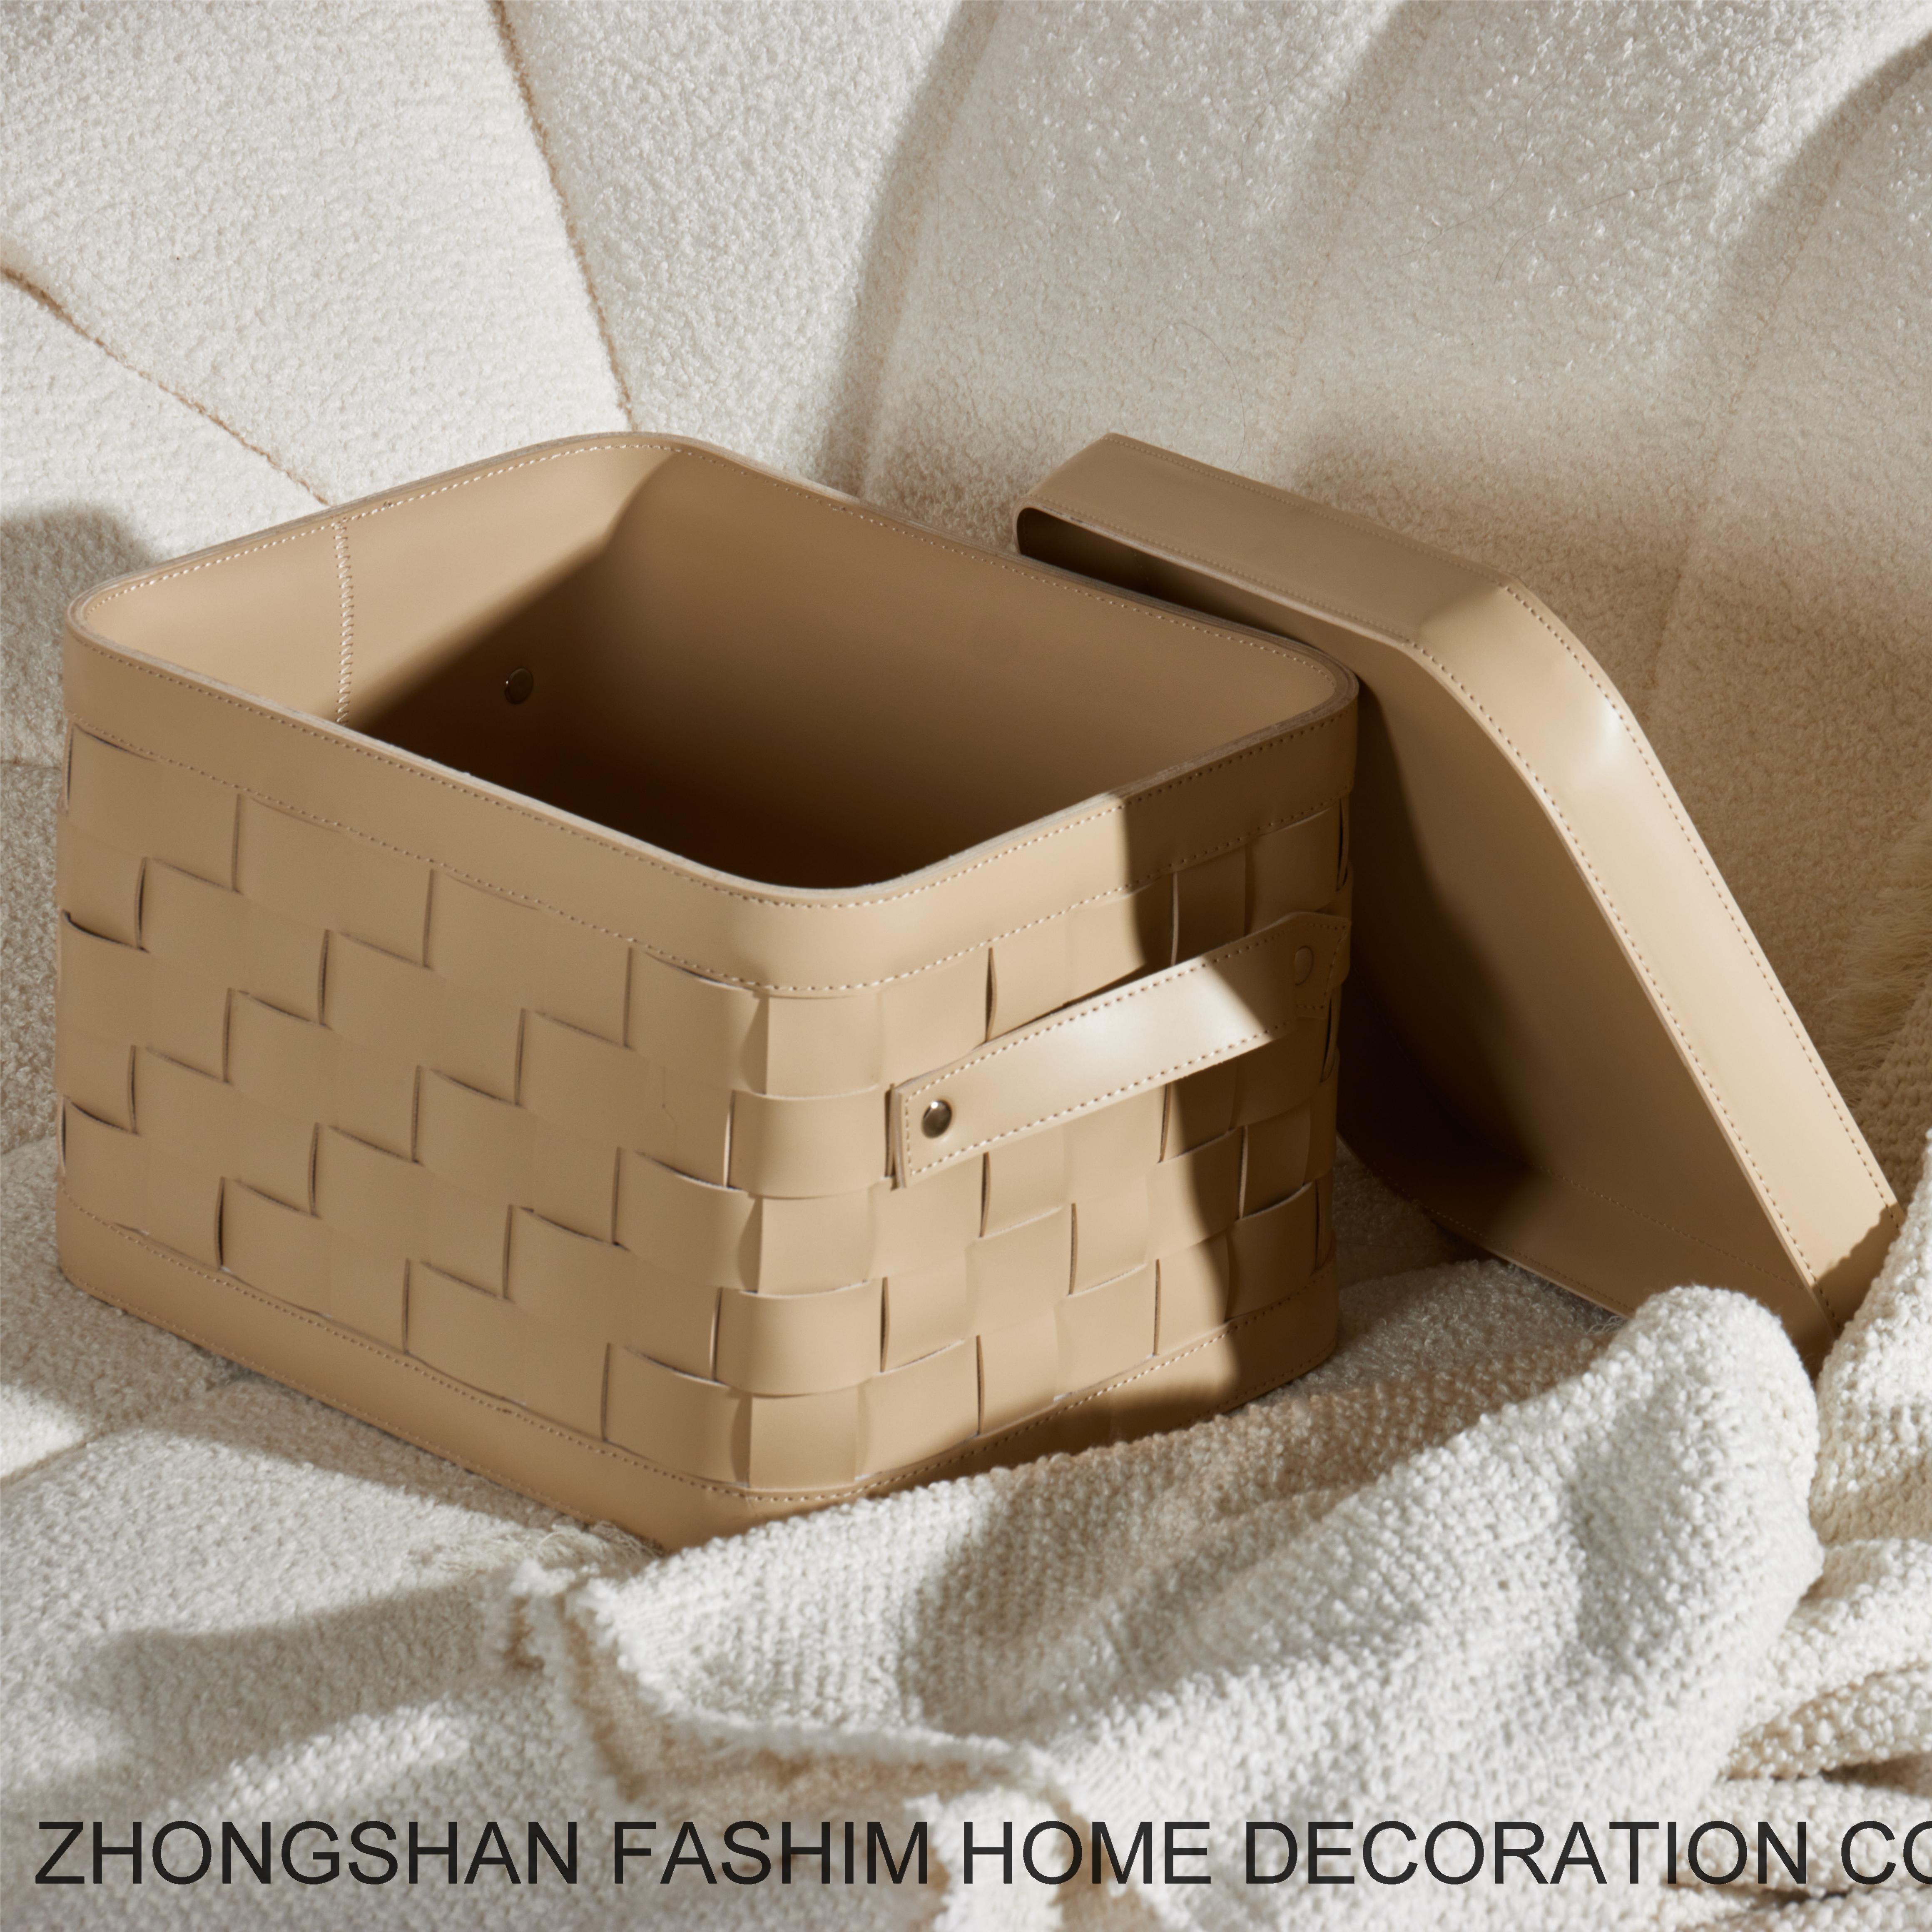 Fashimdecor Elegant home decoration and practical basket